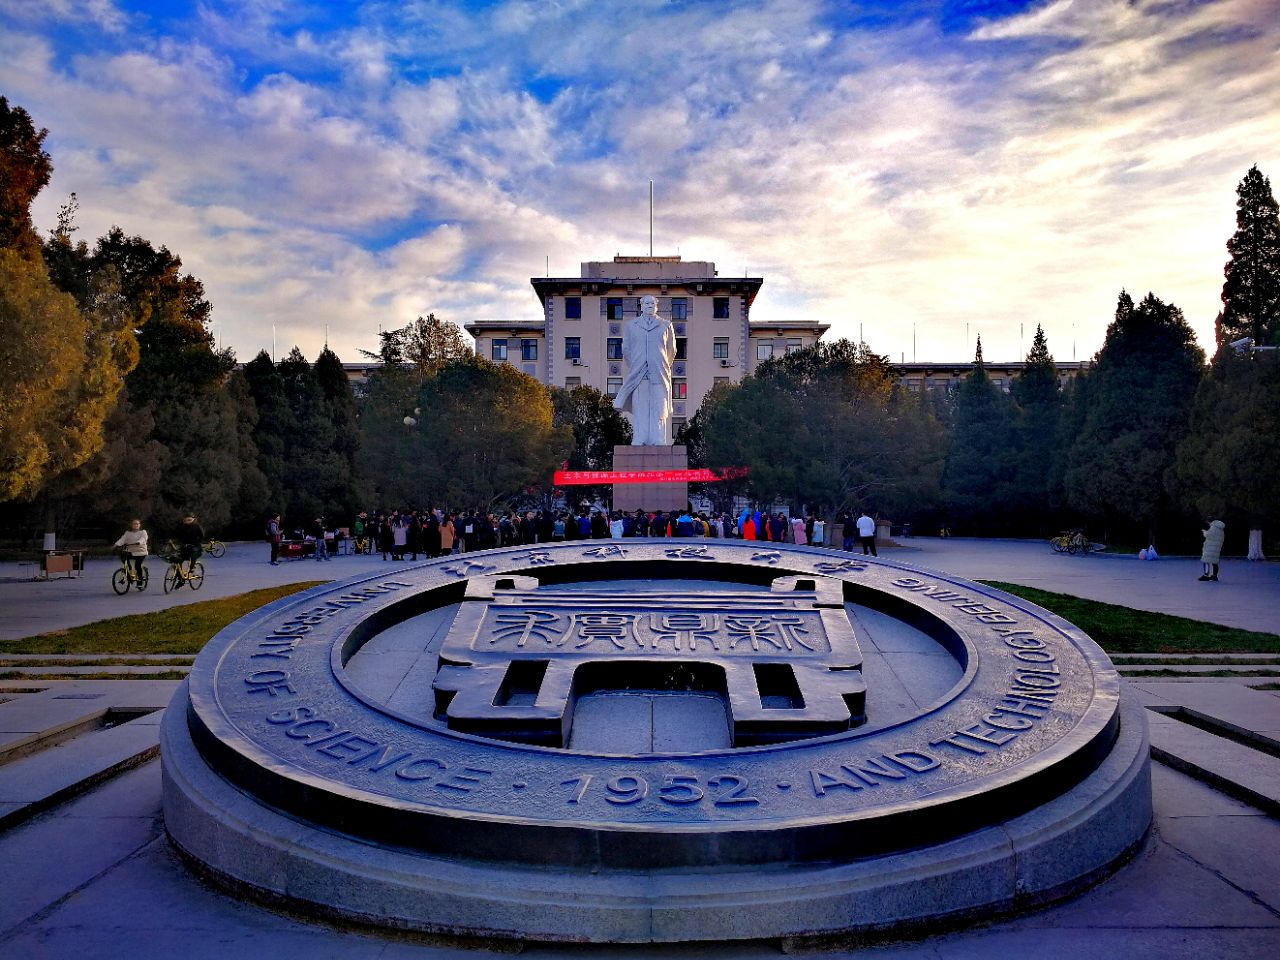 北京科技大学于1952年由天津大学(原北洋大学),清华大学等6所国内著名